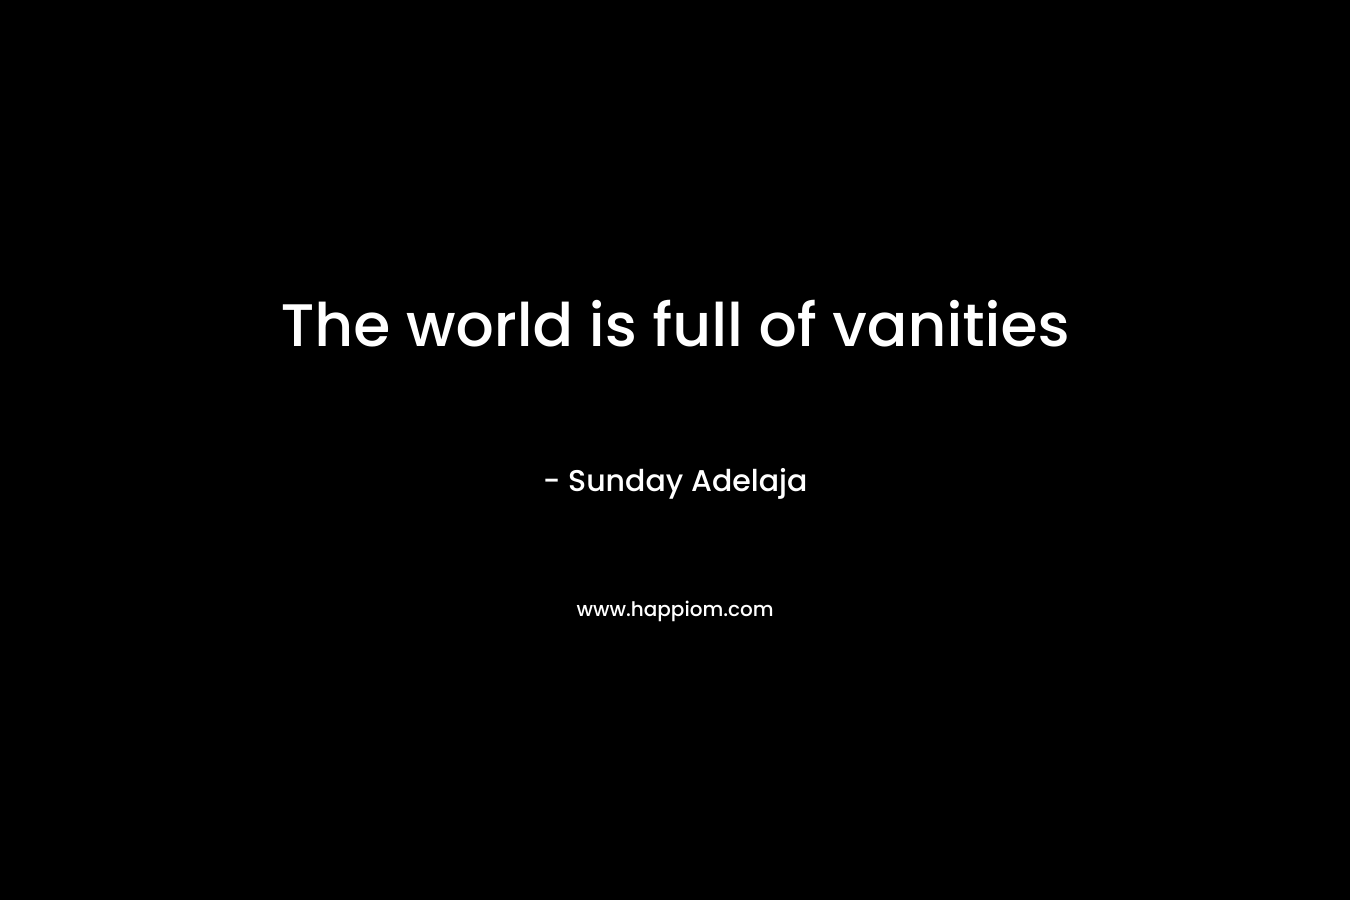 The world is full of vanities